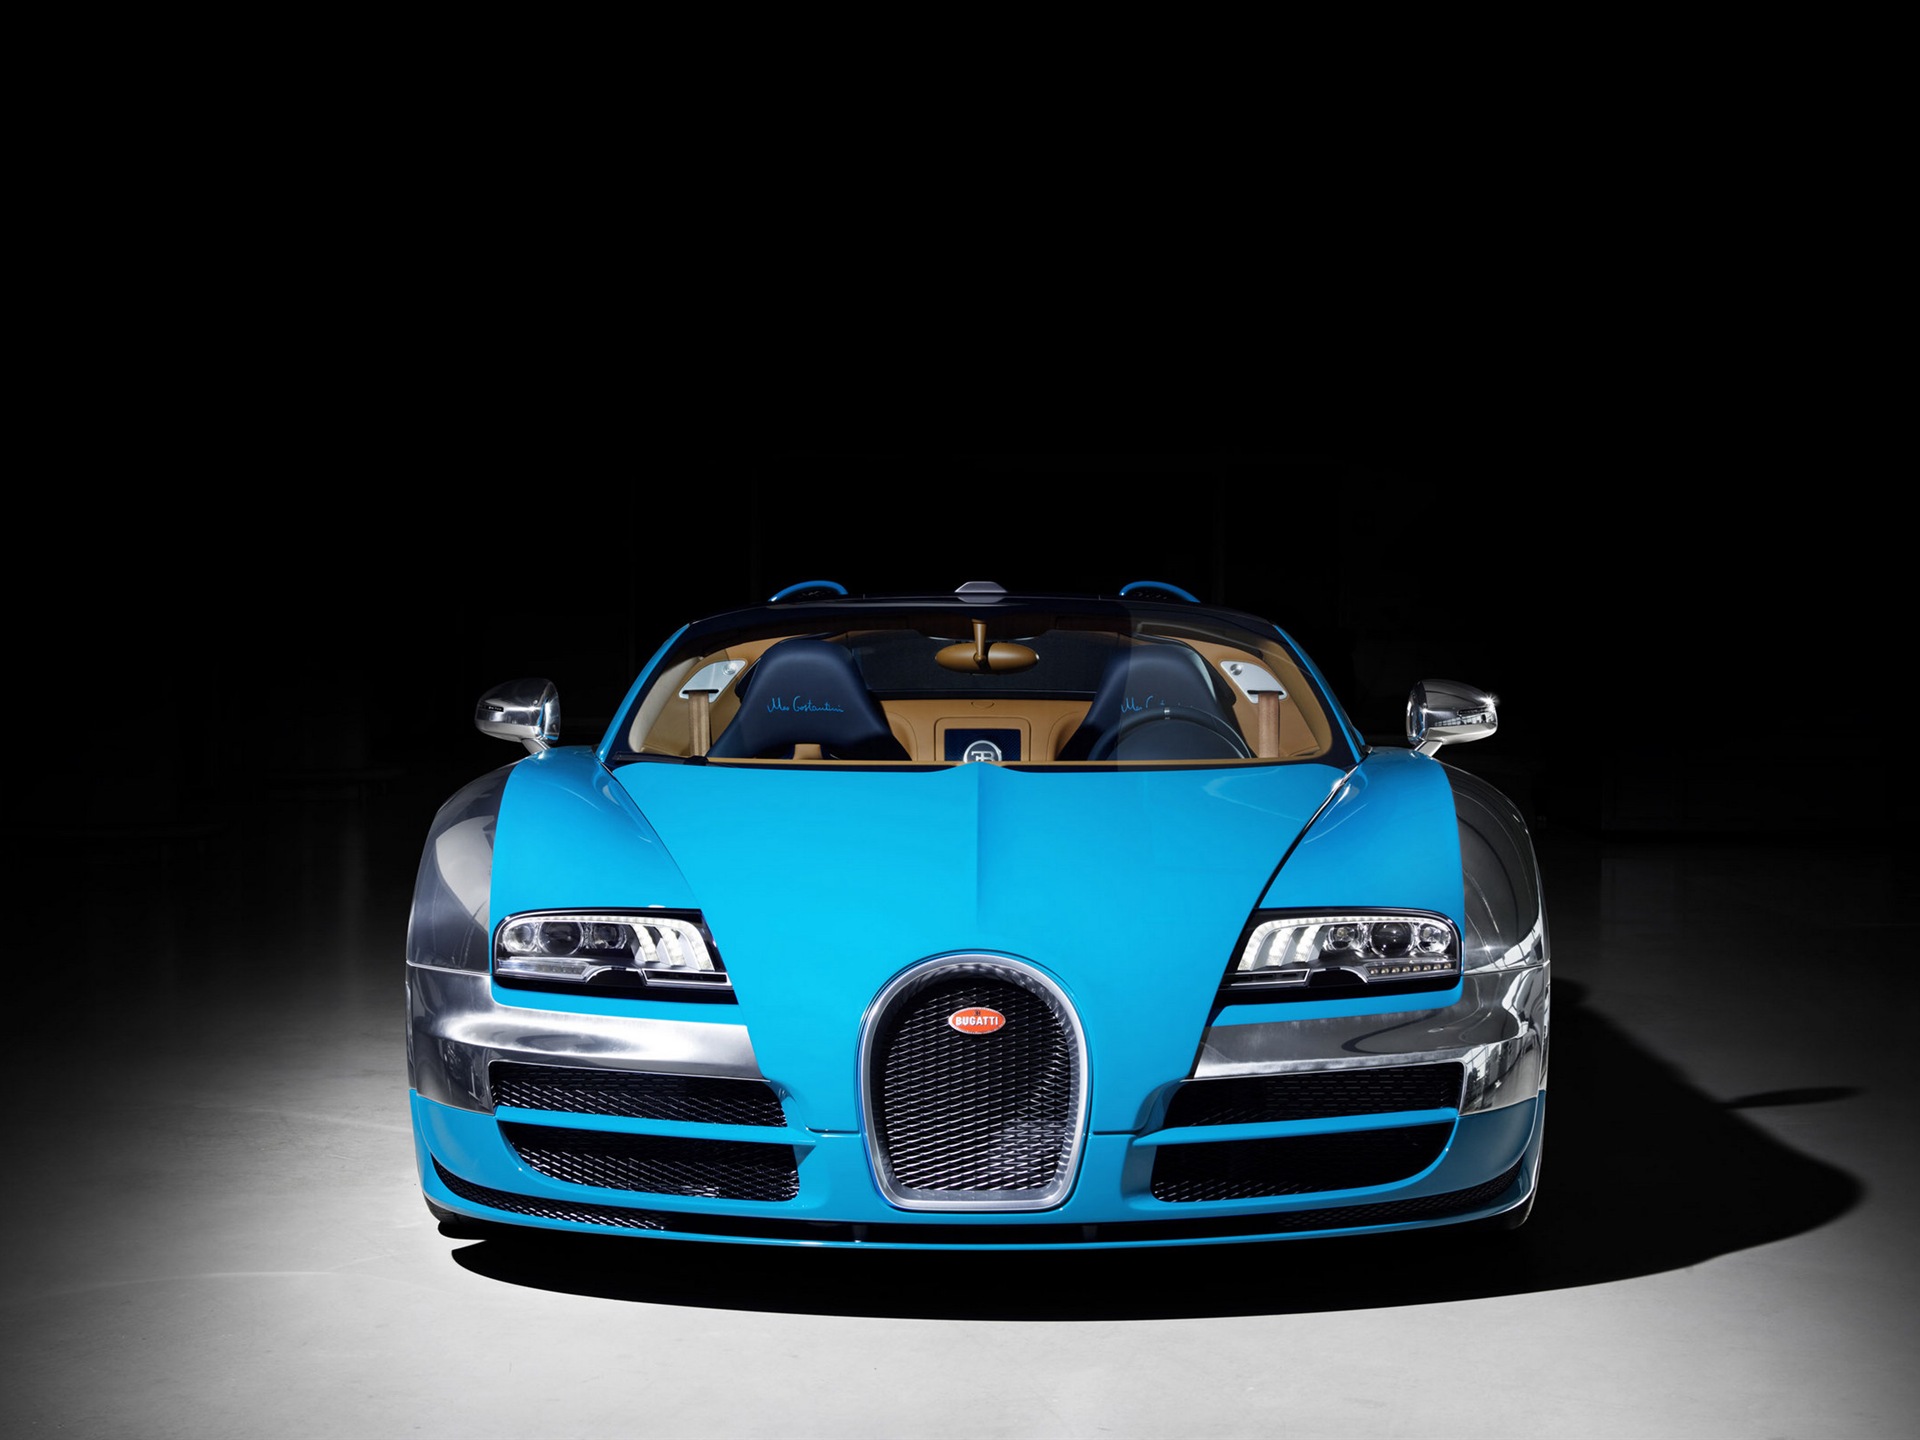 2013 Bugatti Veyron 16.4 Grand Sport Vitesse supercar fondos de pantalla de alta definición #2 - 1920x1440